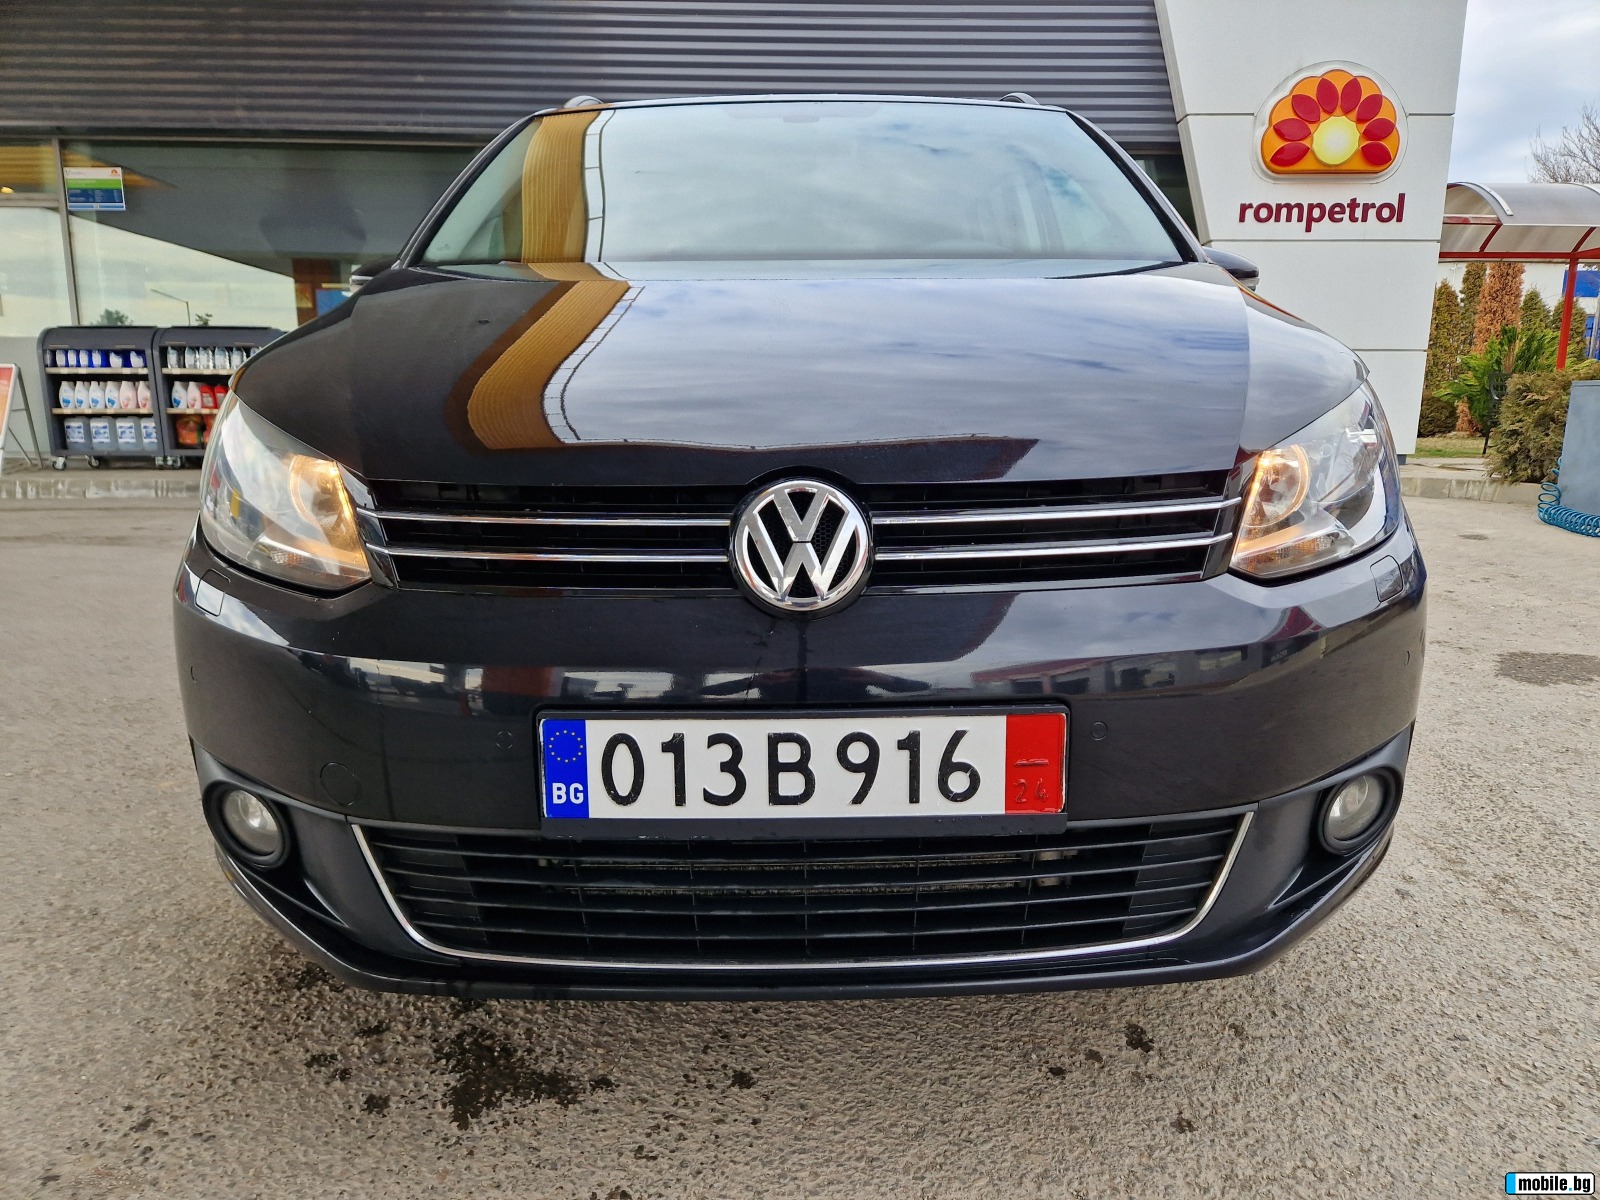 VW Touran 2.0TDI 140ks.  2014. | Mobile.bg   2